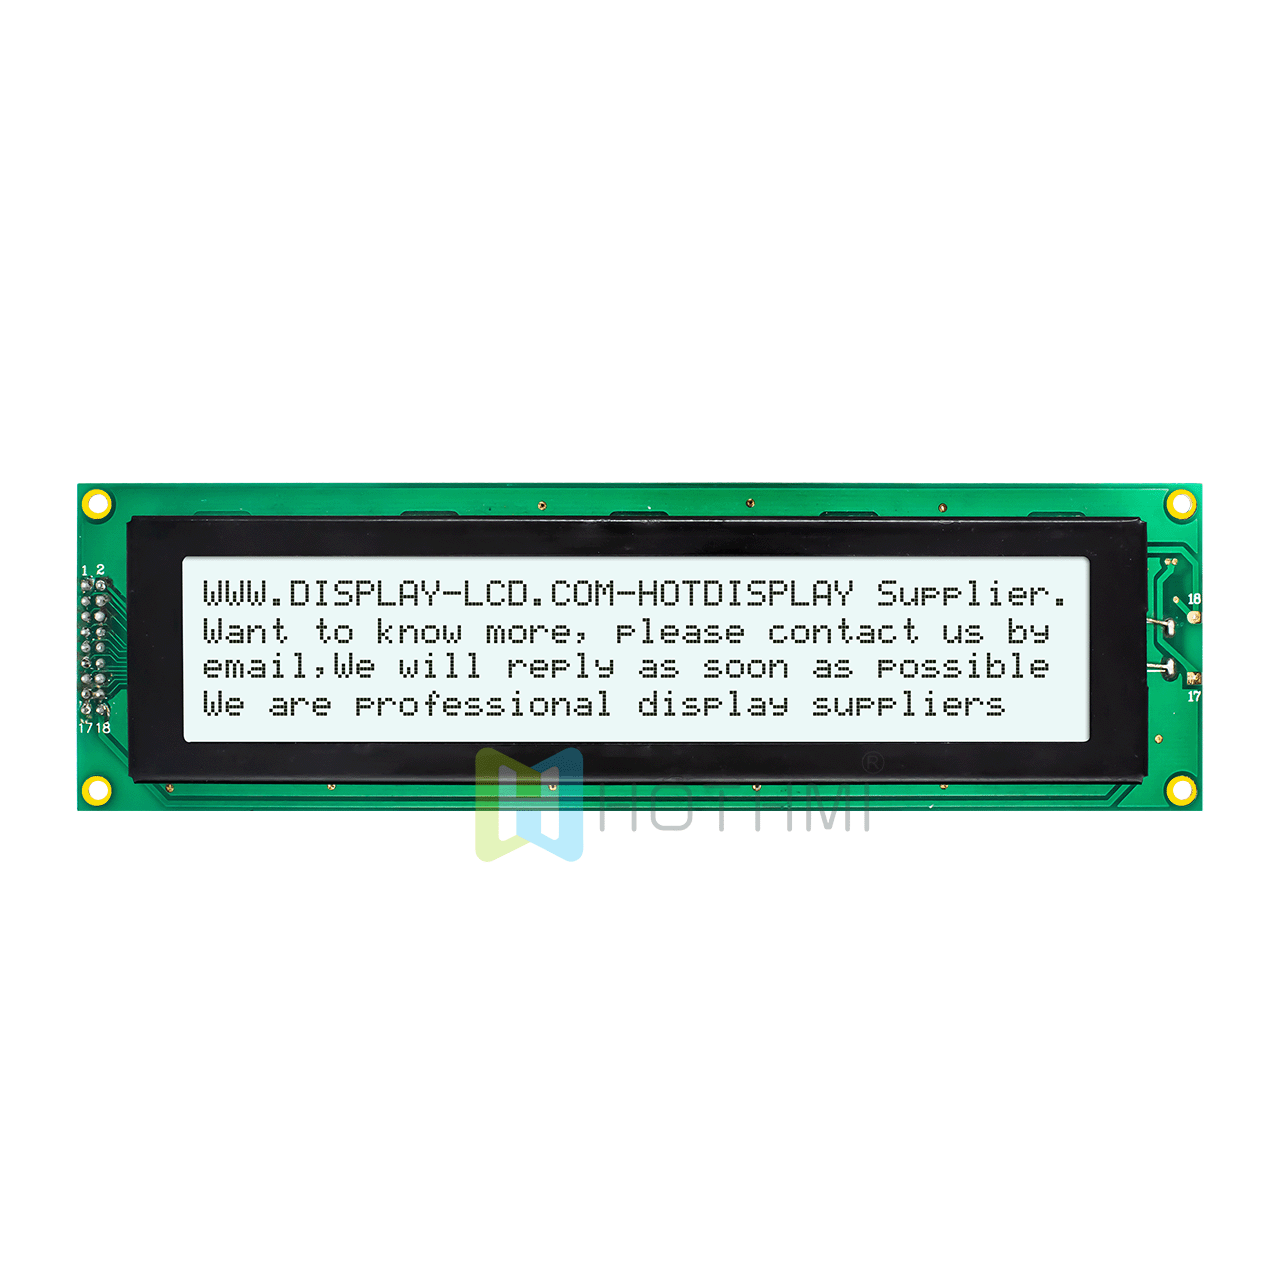 5.0v | 4X40 字符液晶显示屏 | FSTN 正显 | 带白色背光 | Arduino显示屏 | ST7066U | 半透反射式显示屏